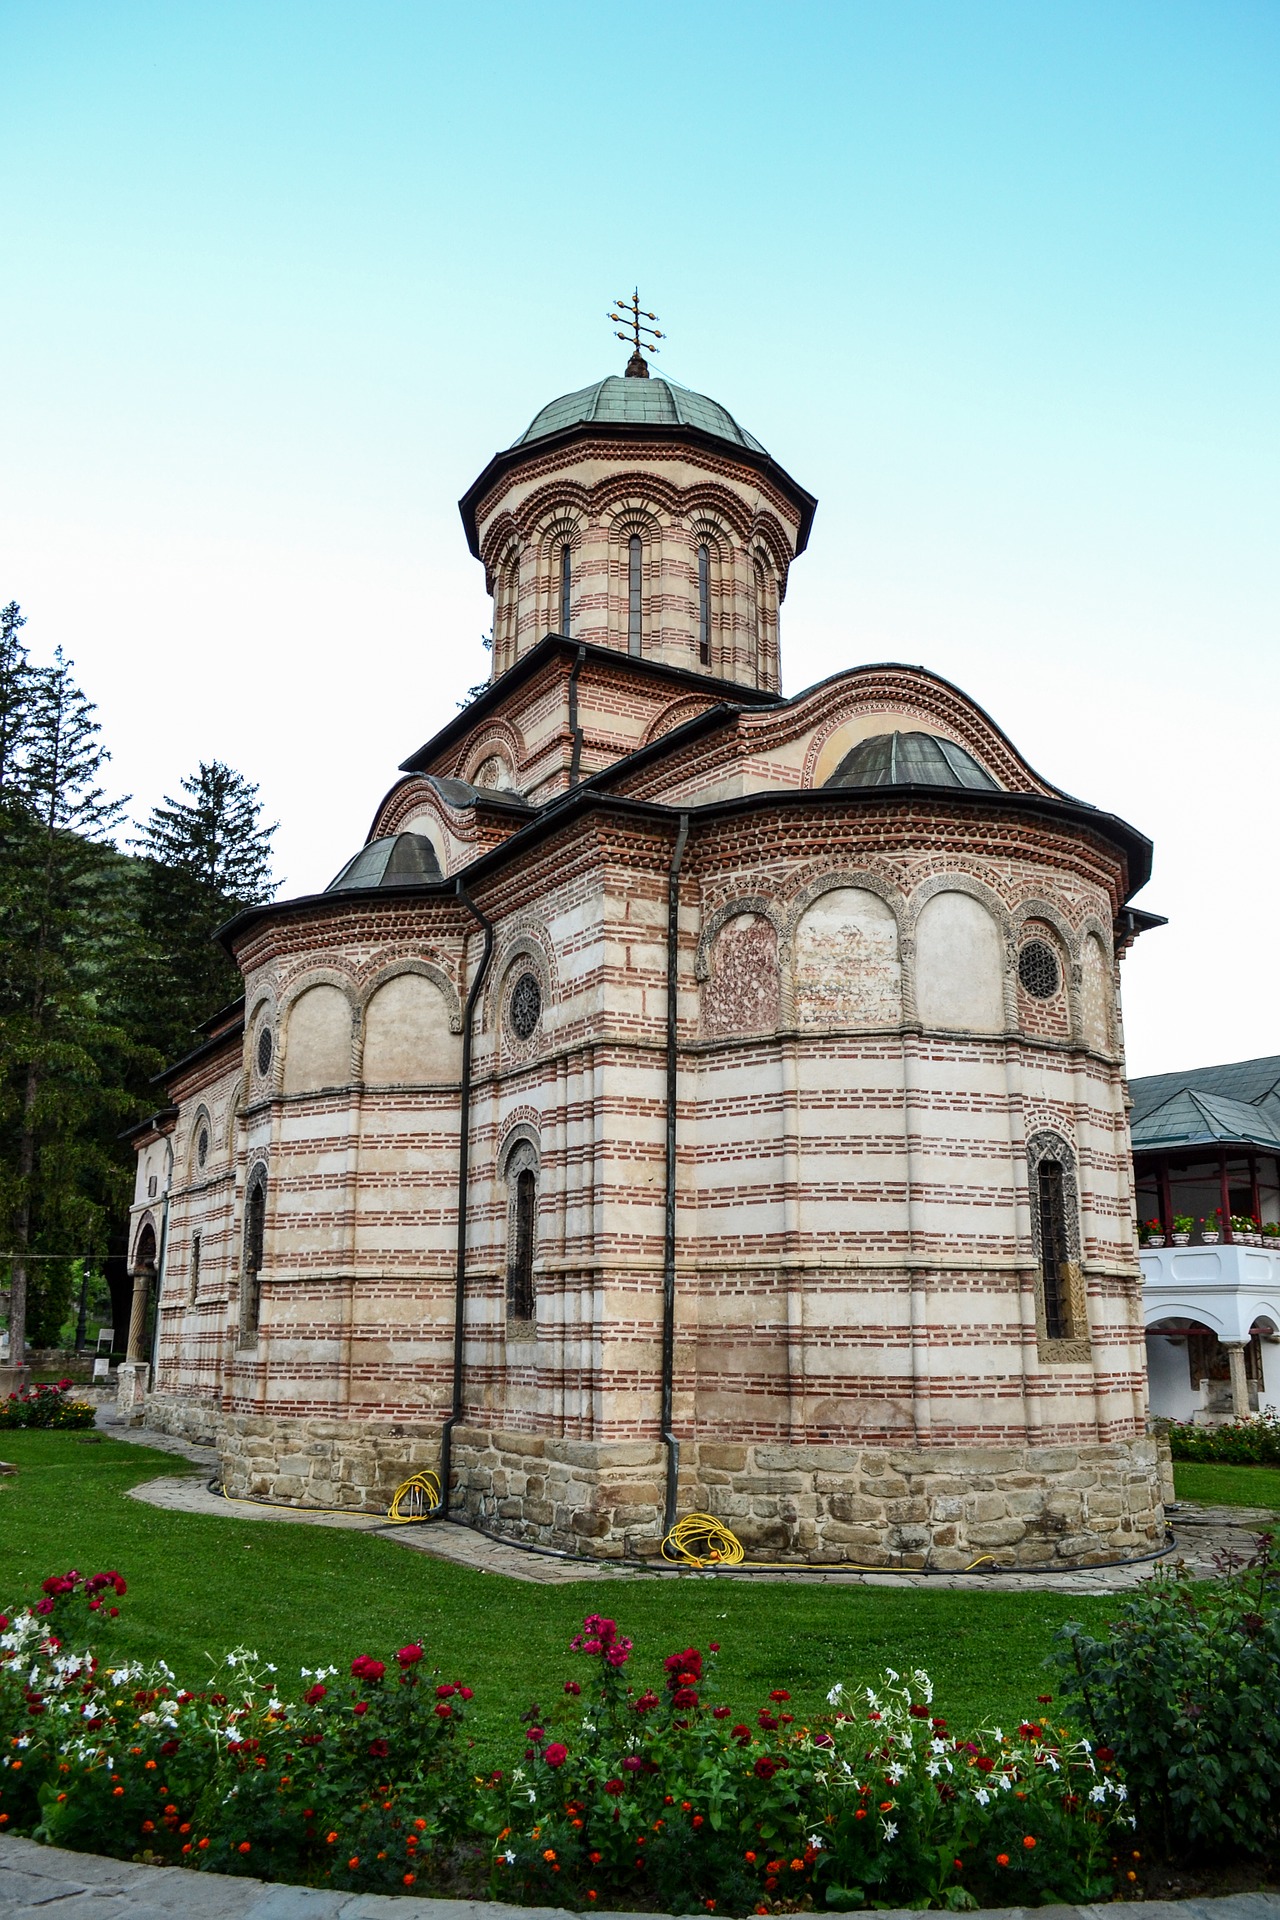 manastirea cozia - located in caciulata-calimanesti romania